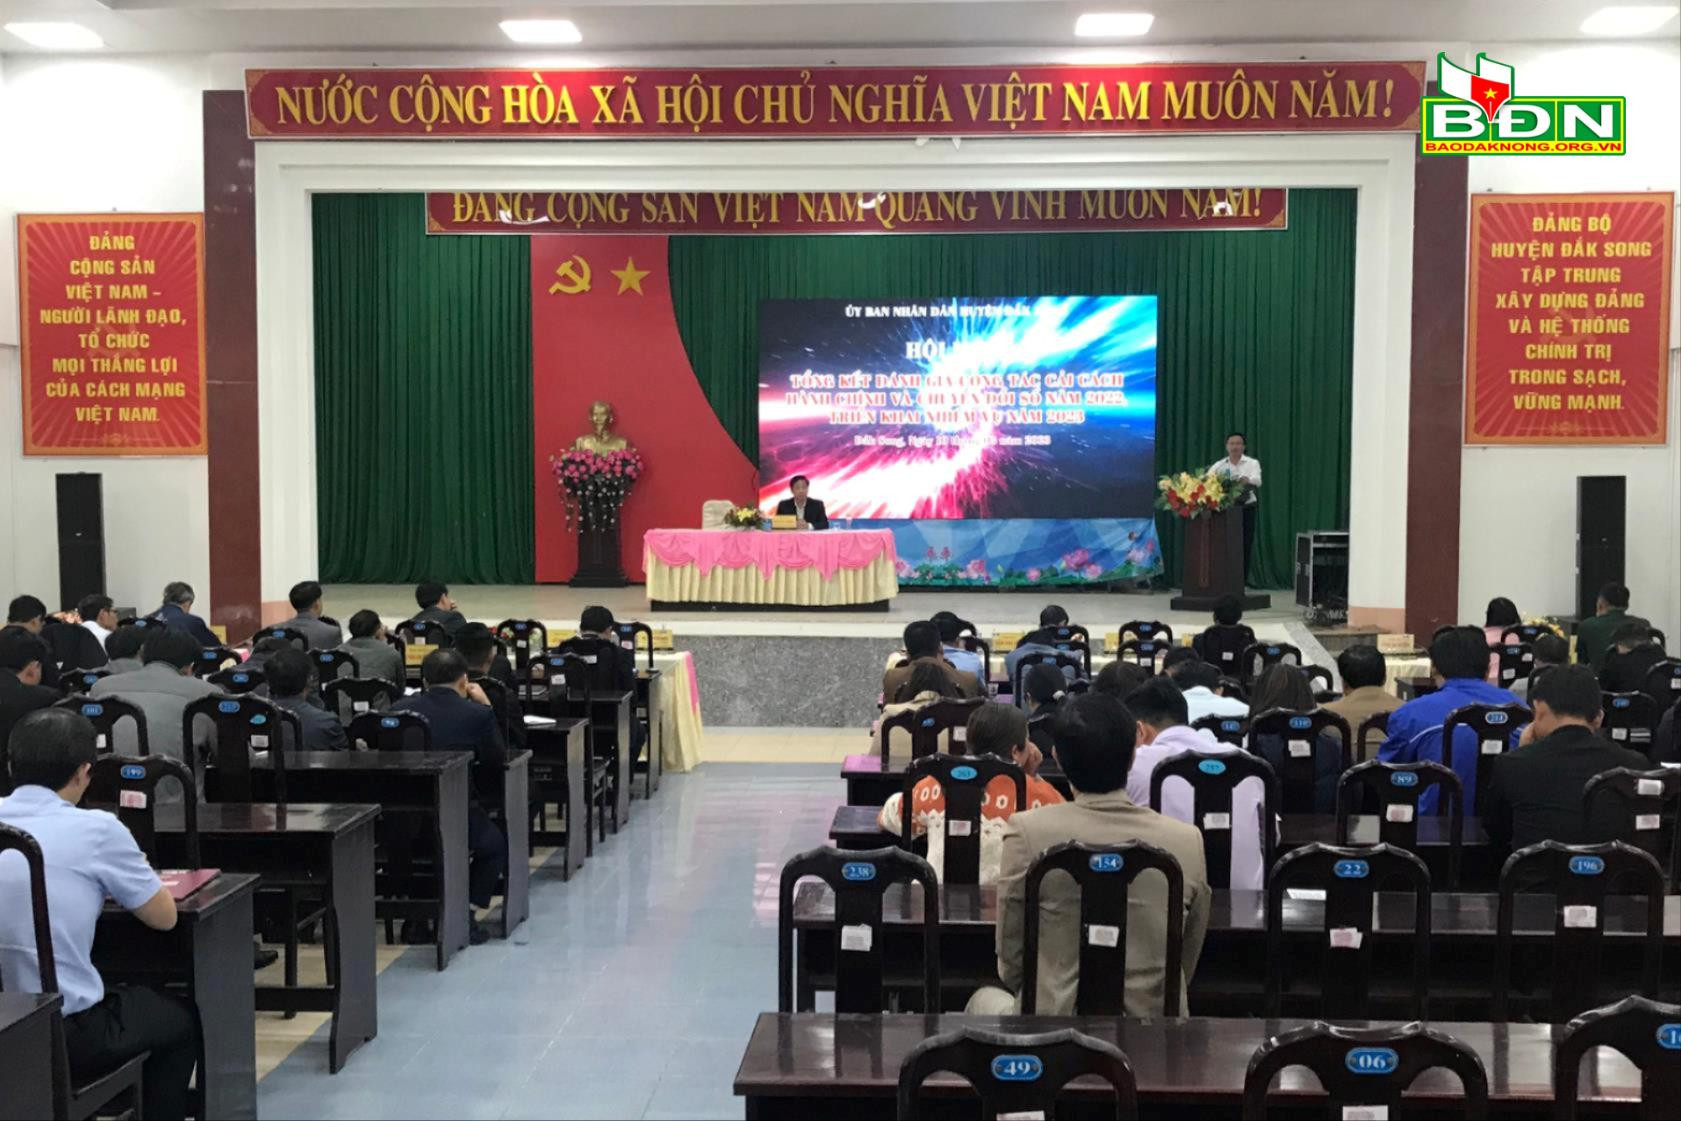 UBND huyện Đăk Song tổ chức hội nghị tổng kết đánh giá công tác cải cách hành chính và chuyển đổi số năm 2022, triển khai nhiệm vụ năm 2023